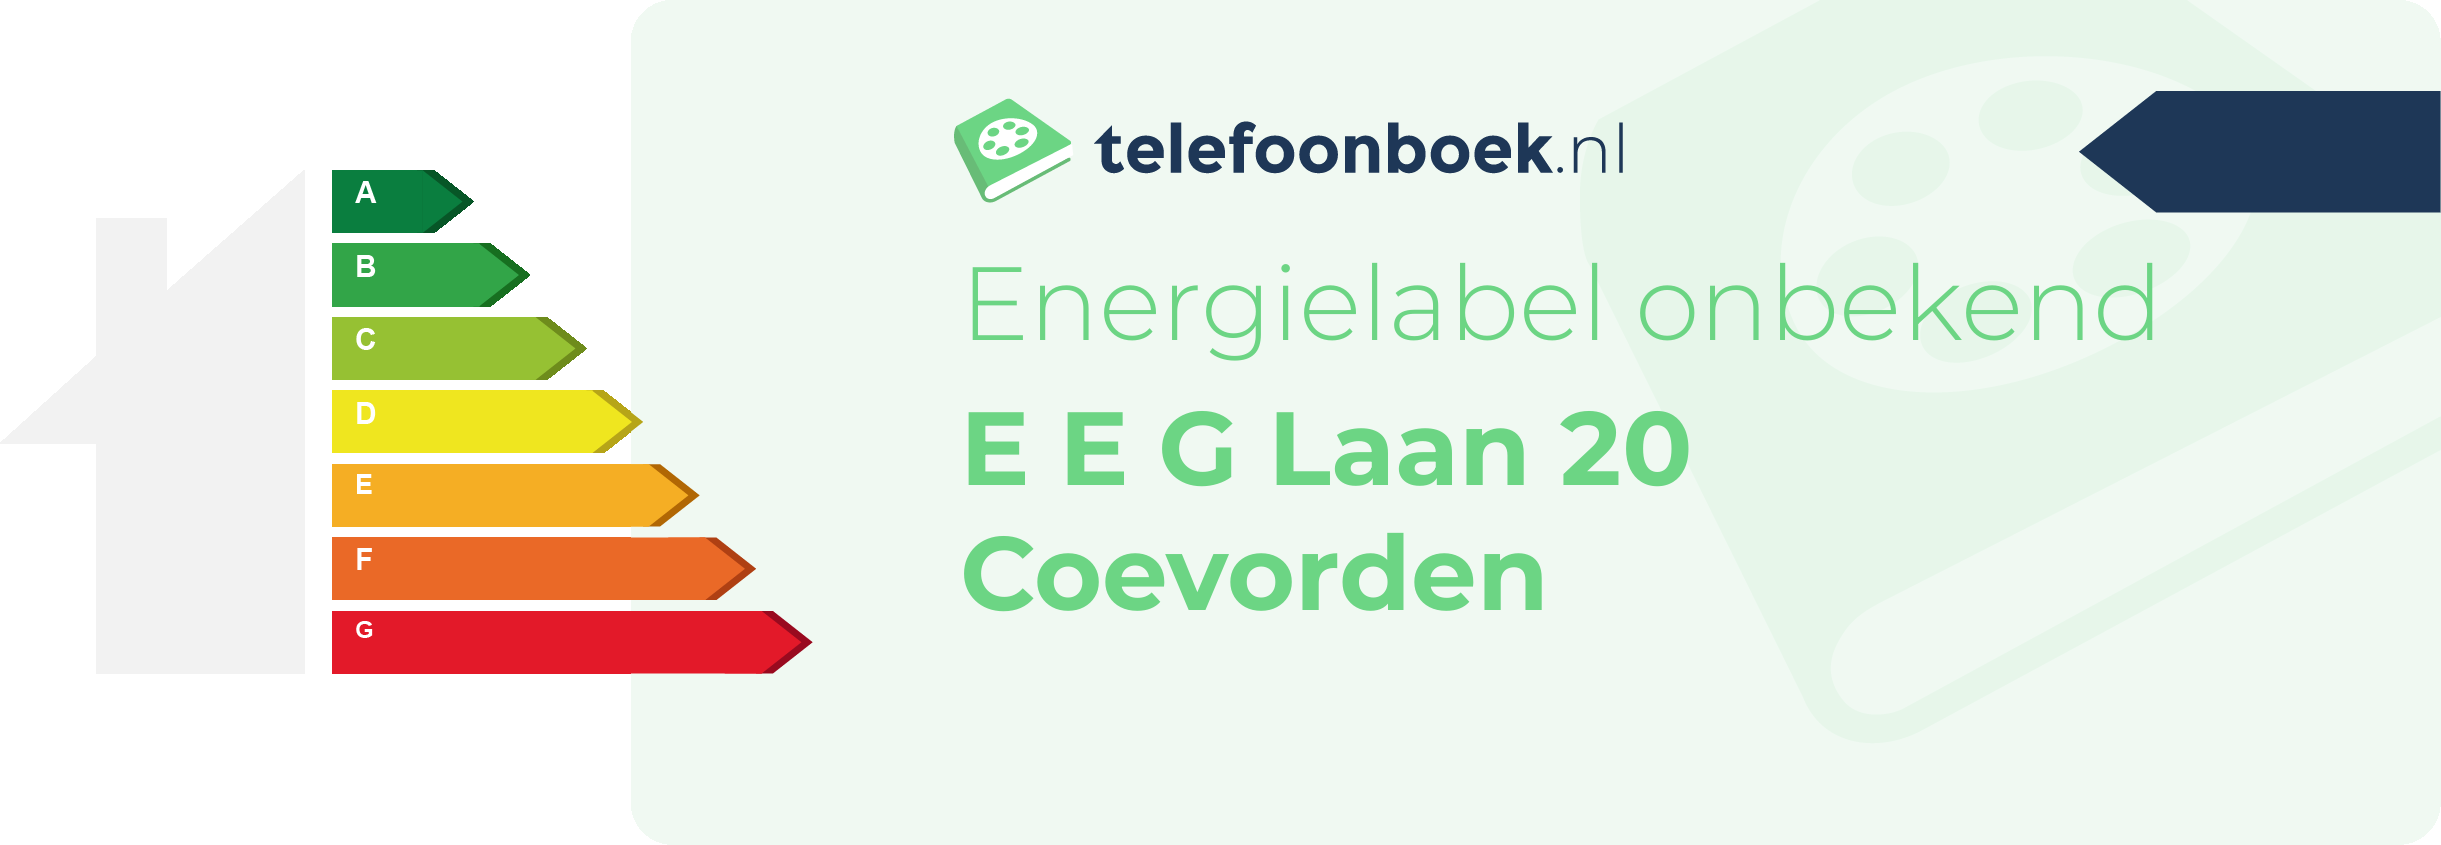 Energielabel E E G Laan 20 Coevorden